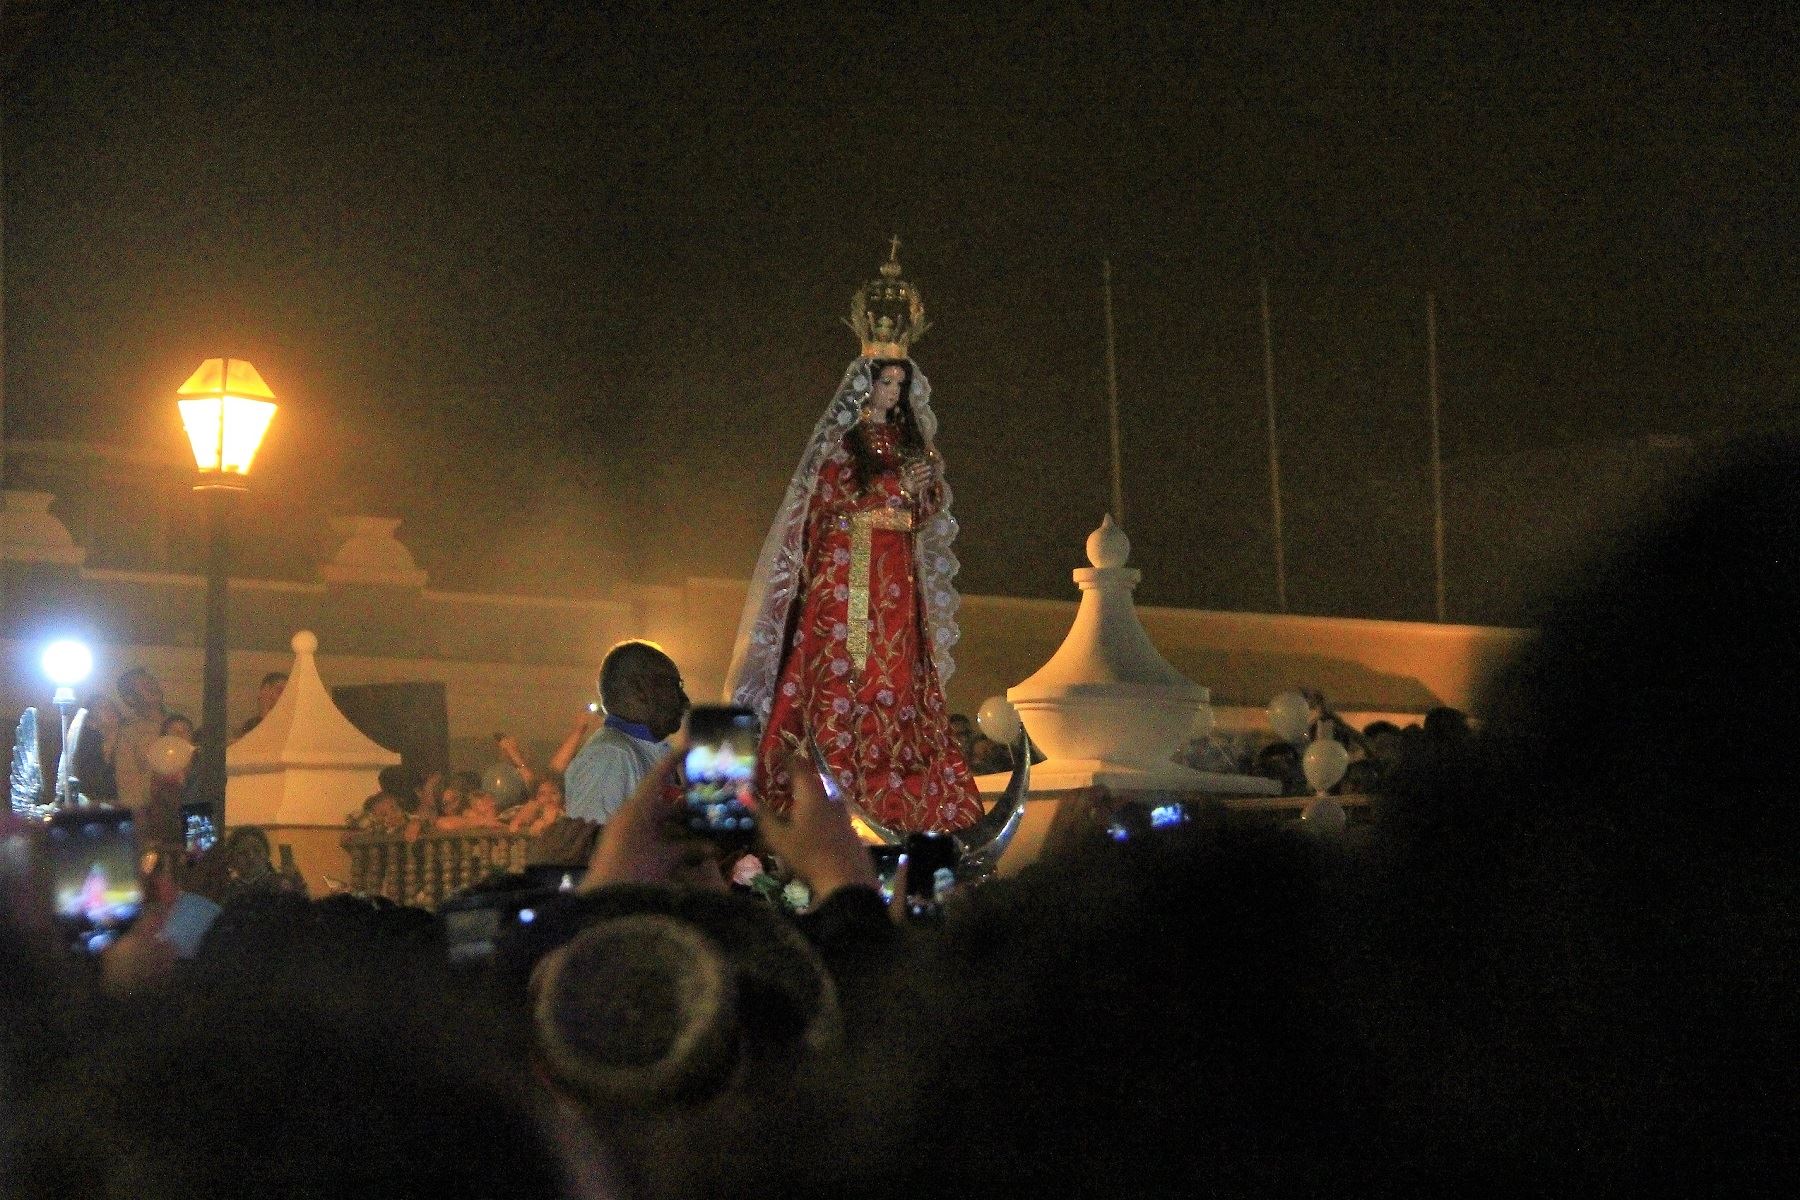 Imagen de la Virgen de la Puerta tuvo multitudinario recibimiento a su llegada a Trujillo, donde participará del encuentro con el Papa Francisco. Foto: ANDINA/Luis Puell.